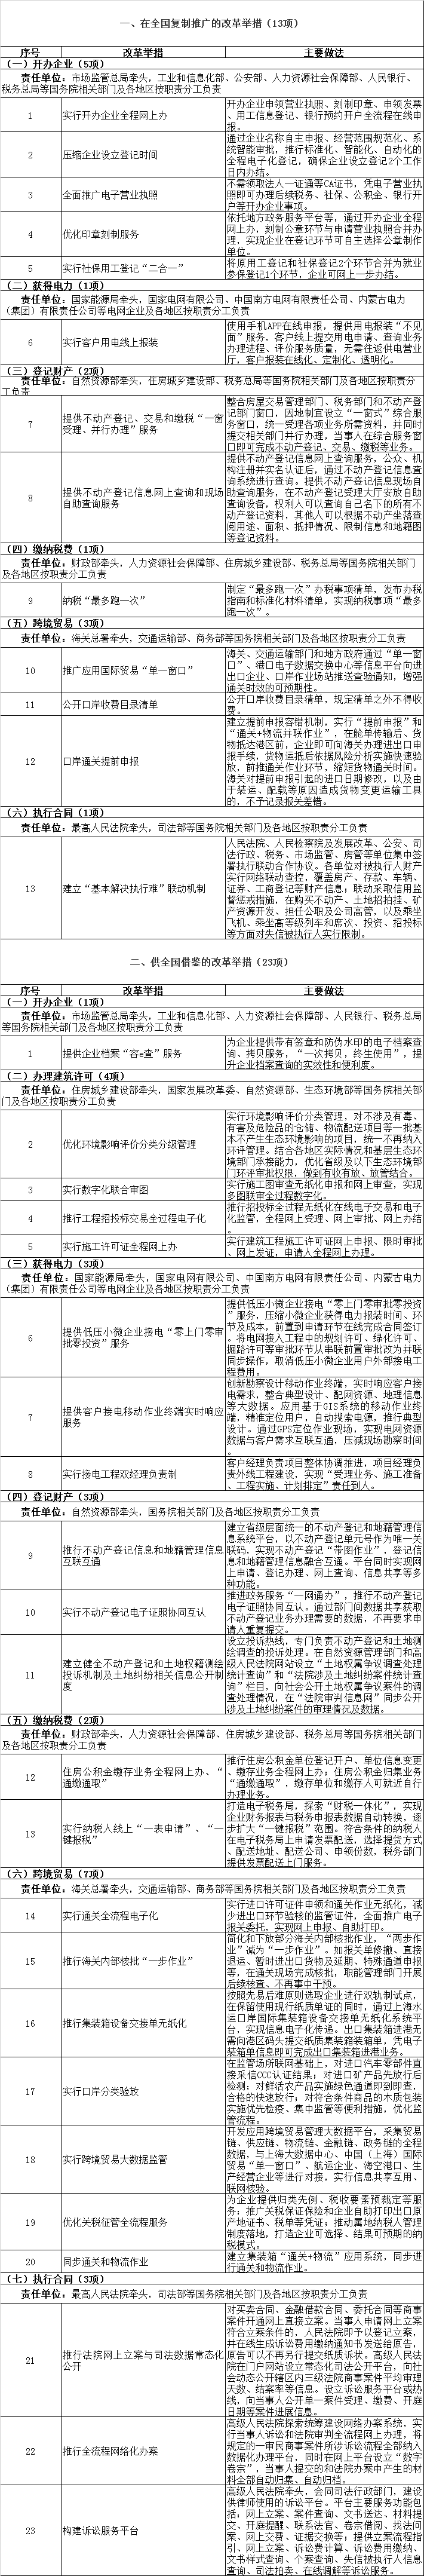 优化营商环境改革举措清单.png